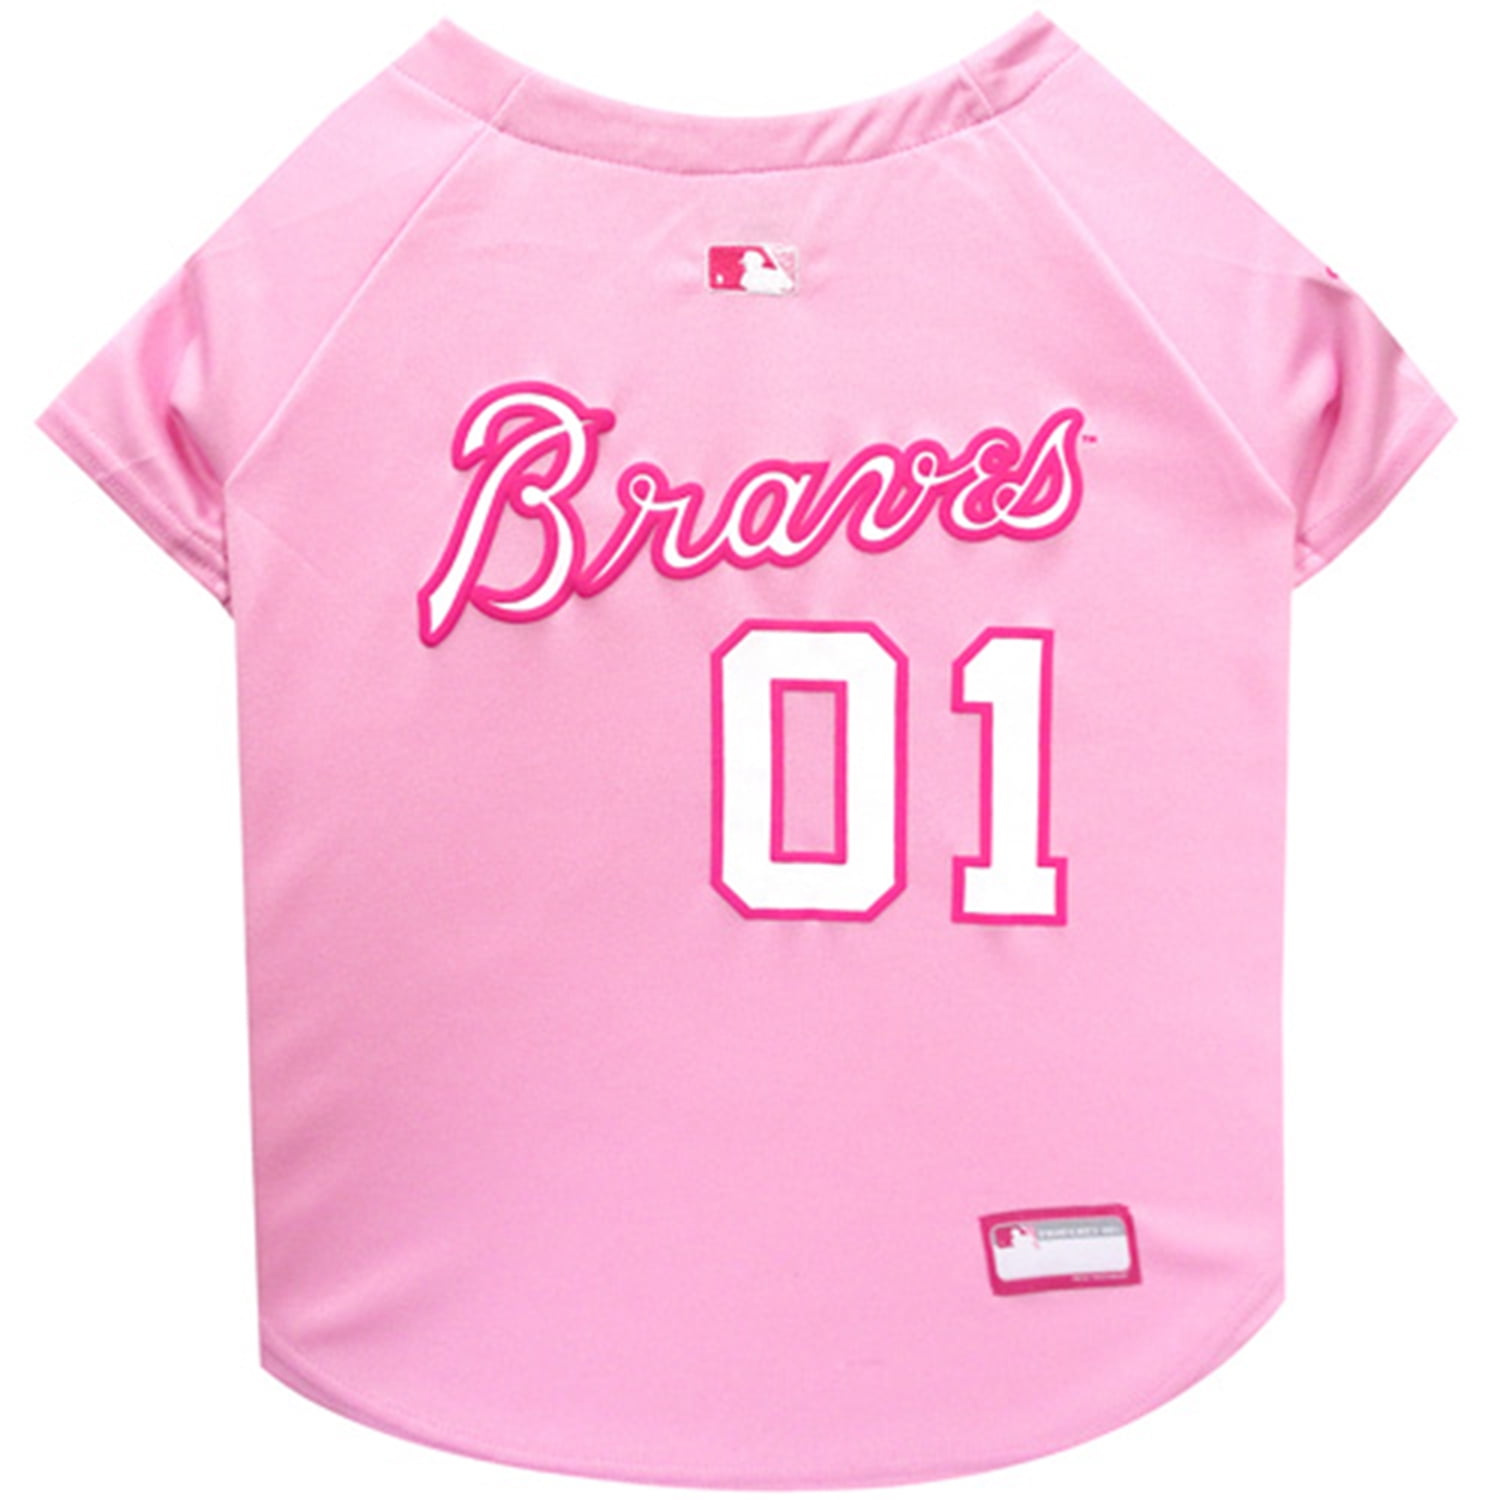 baseball jersey pink